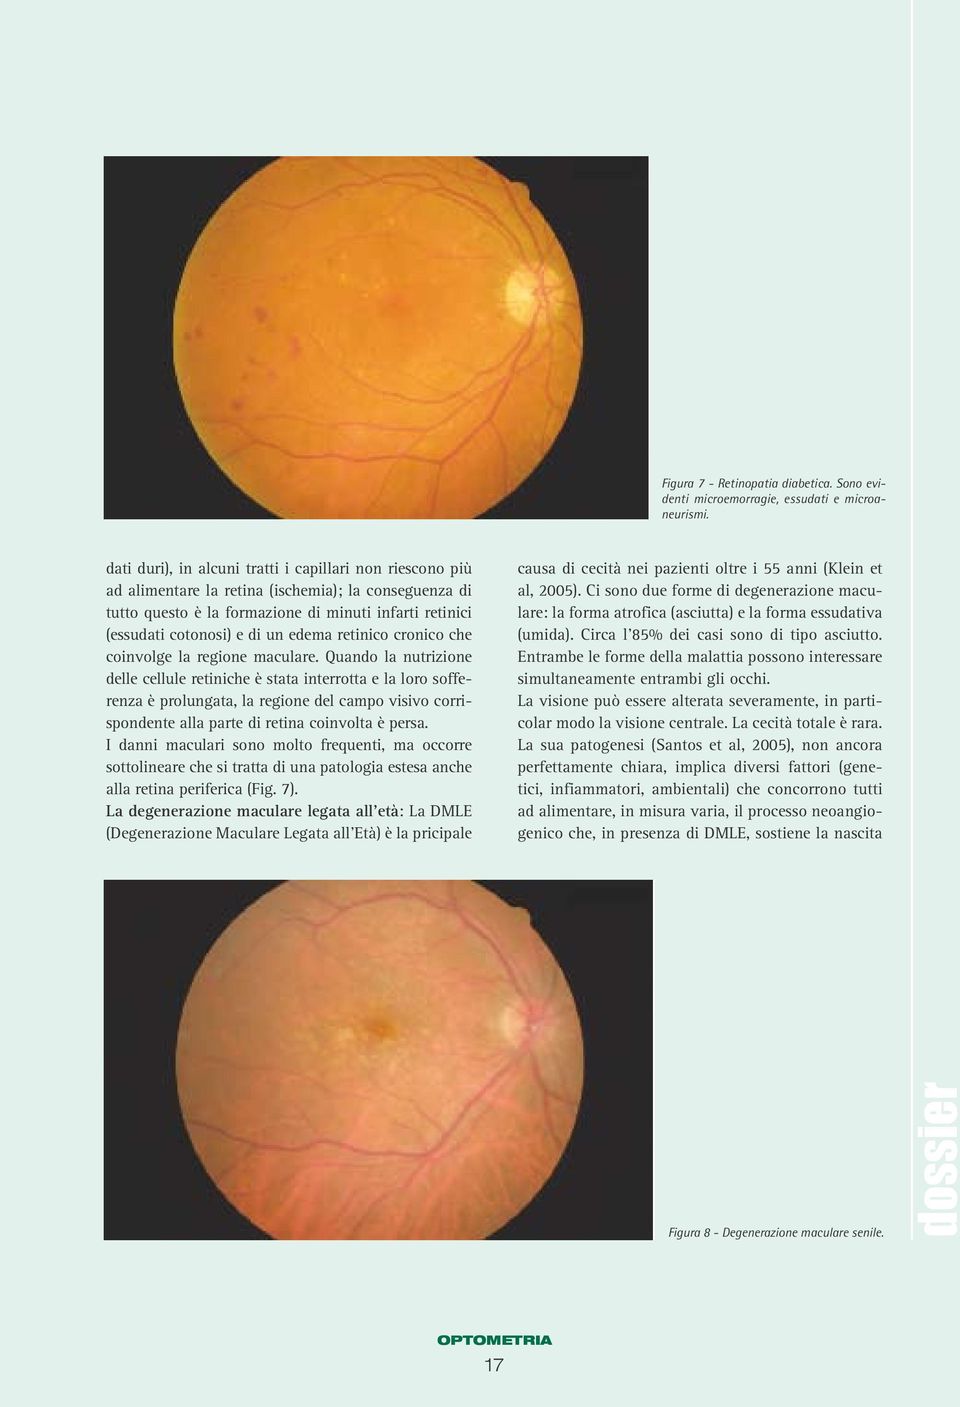 edema retinico cronico che coinvolge la regione maculare.